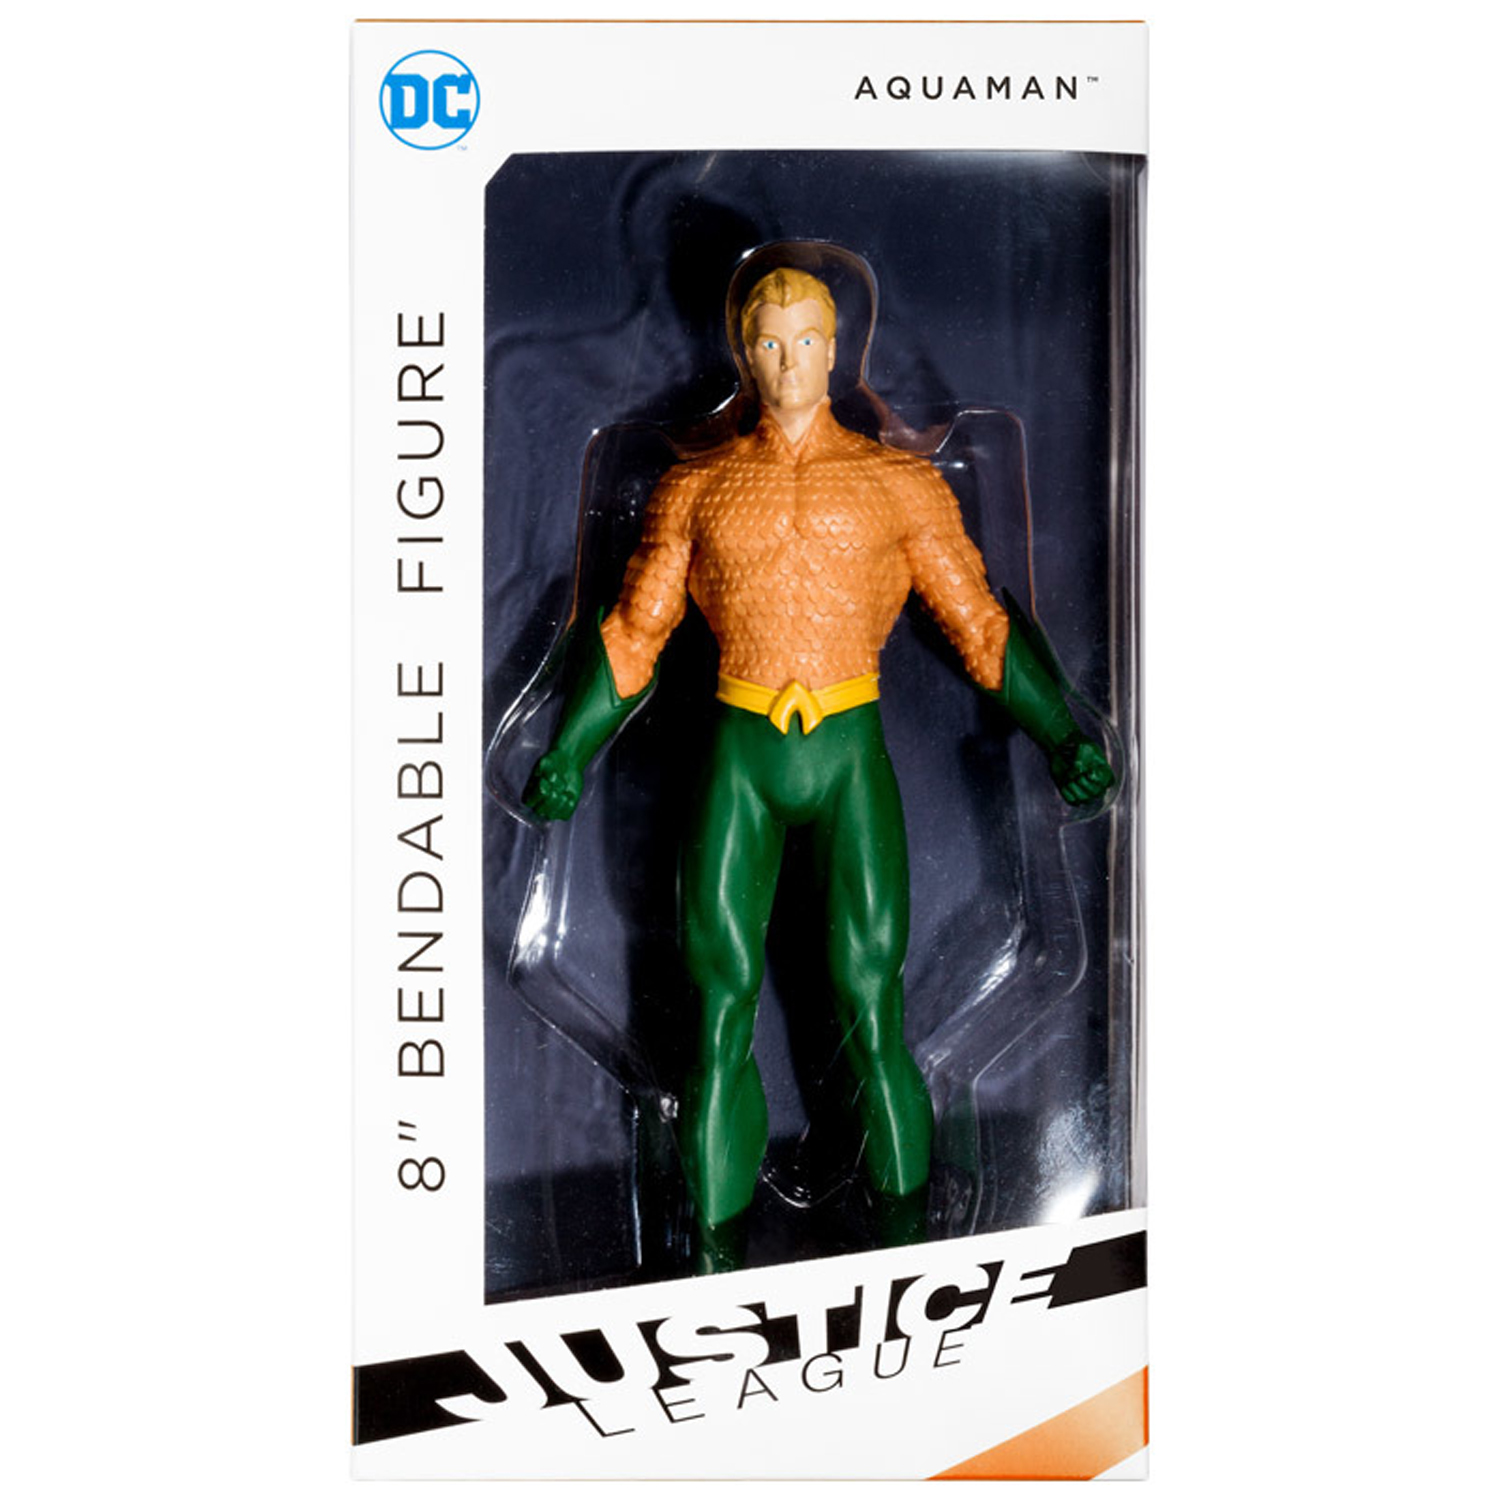 NJ Croce DC Comics Justice League New 52 Aquaman 8